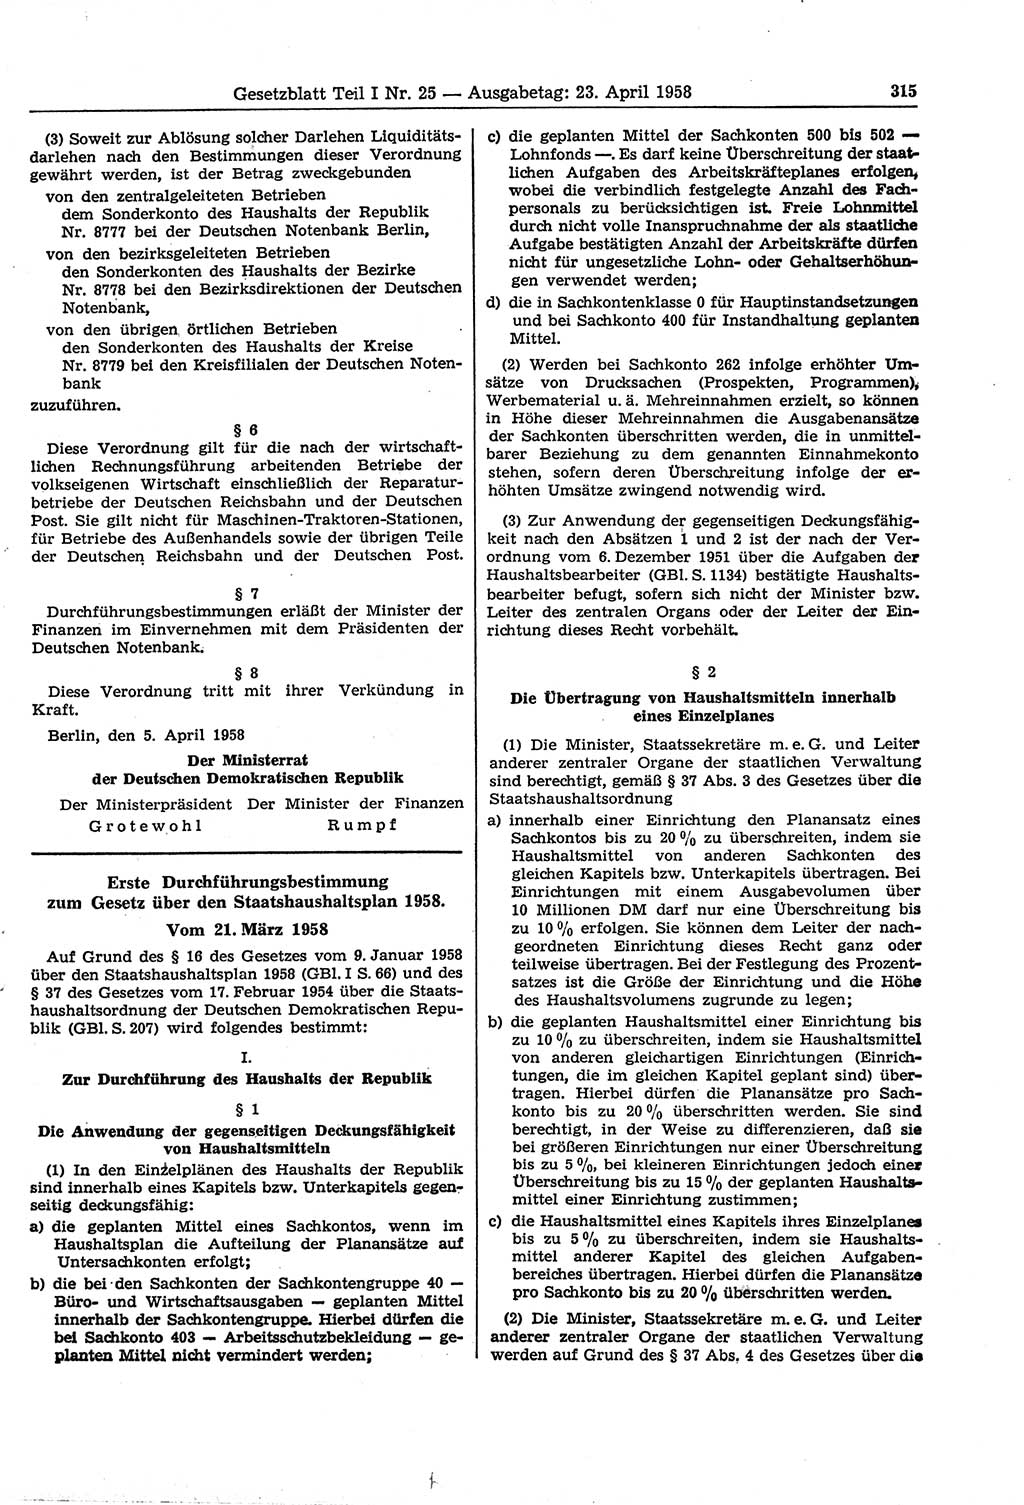 Gesetzblatt (GBl.) der Deutschen Demokratischen Republik (DDR) Teil Ⅰ 1958, Seite 315 (GBl. DDR Ⅰ 1958, S. 315)